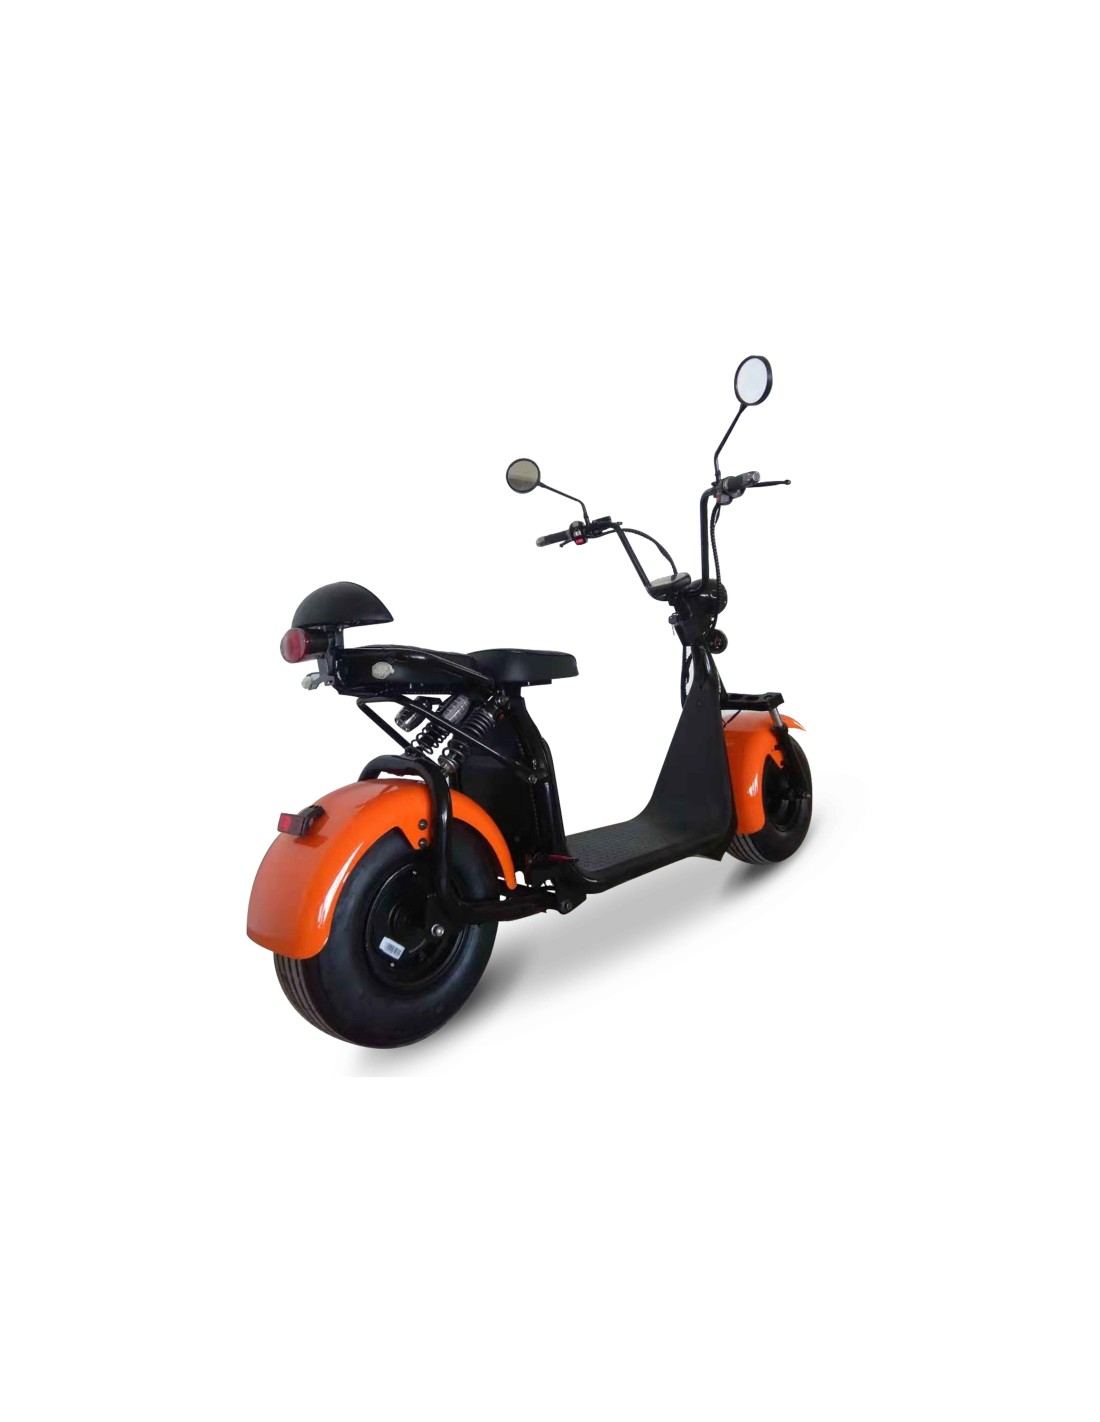 Scooter BOGEY 4 roues - Scooter électrique pour gagner en mobilité